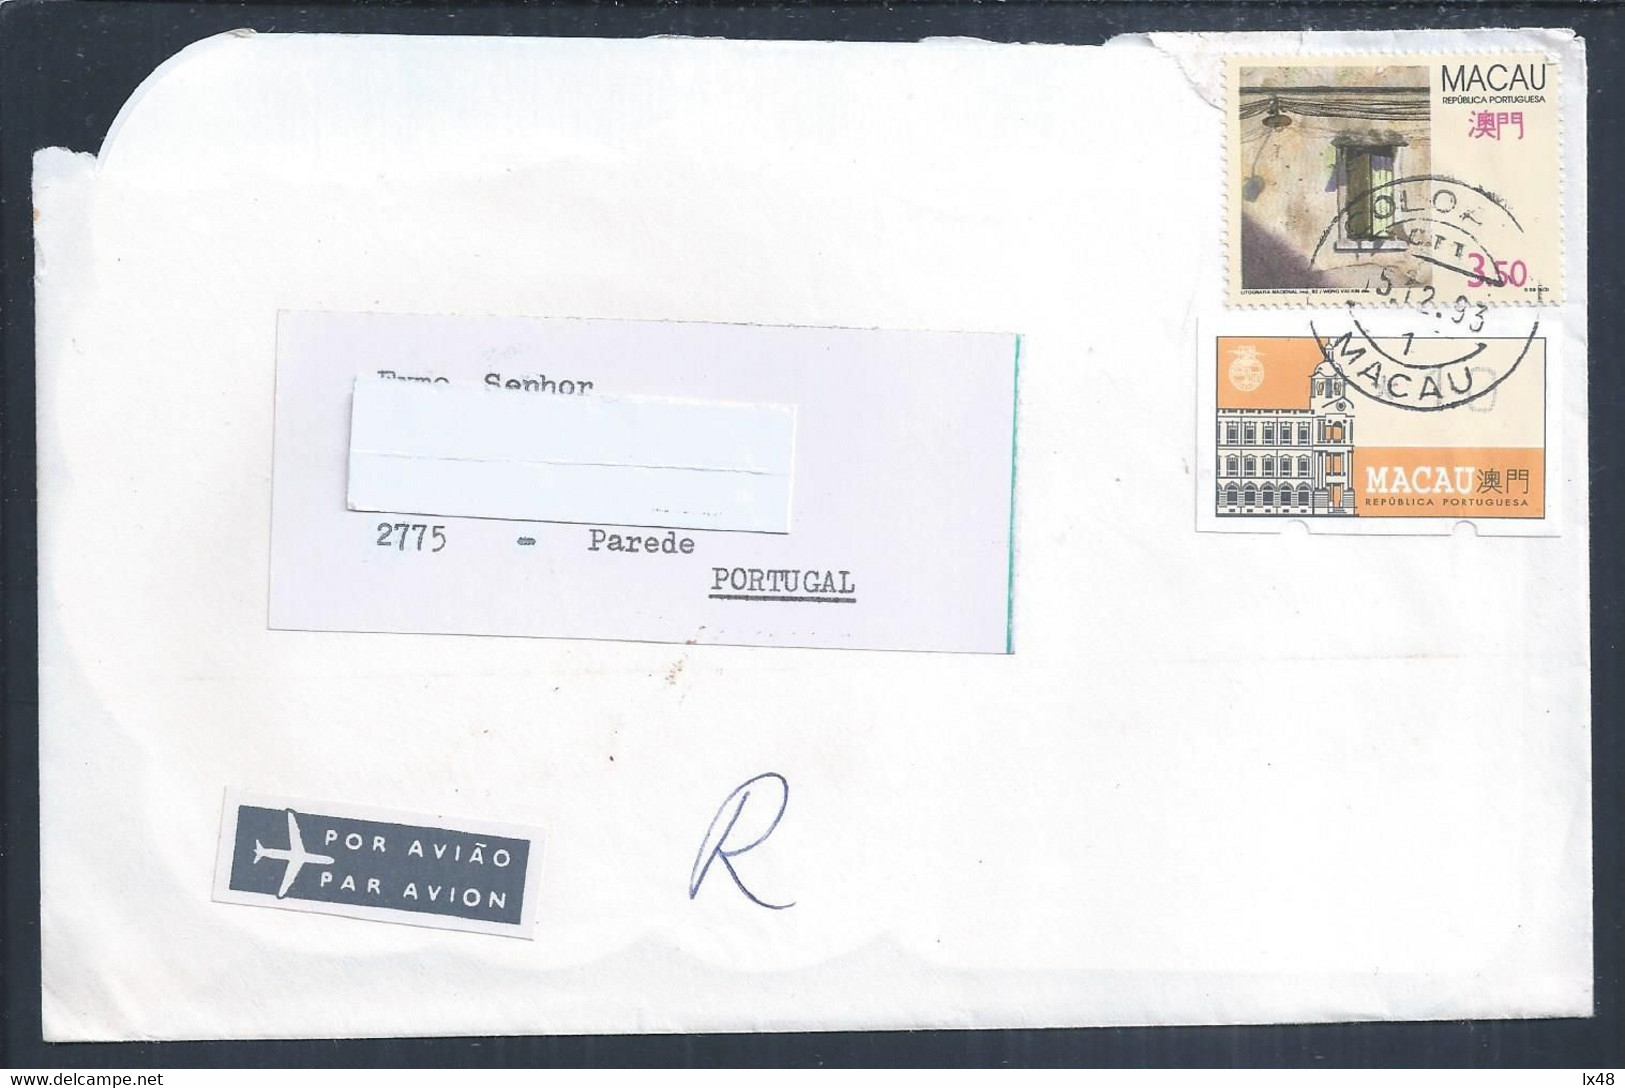 Letter From Coloane, Macau With Franchise Printing Label, 1993. Carta De Coloane, Macau Com Etiqueta De Impressão De Fra - Briefe U. Dokumente